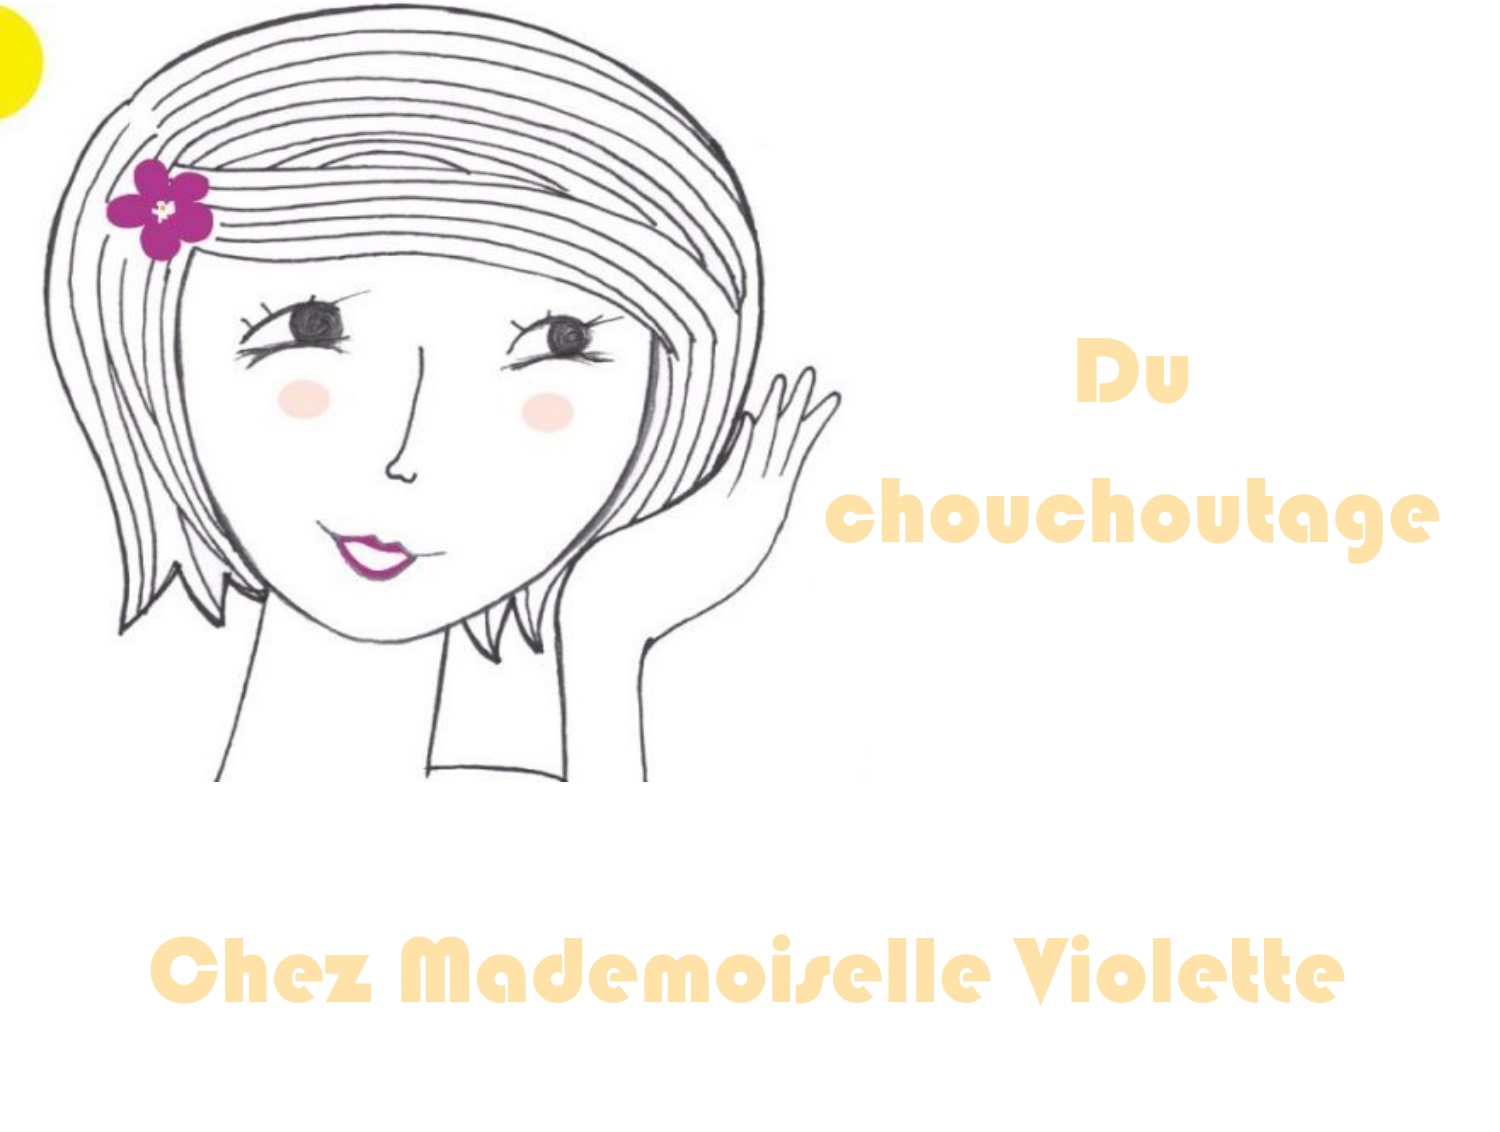 Mademoiselle violette